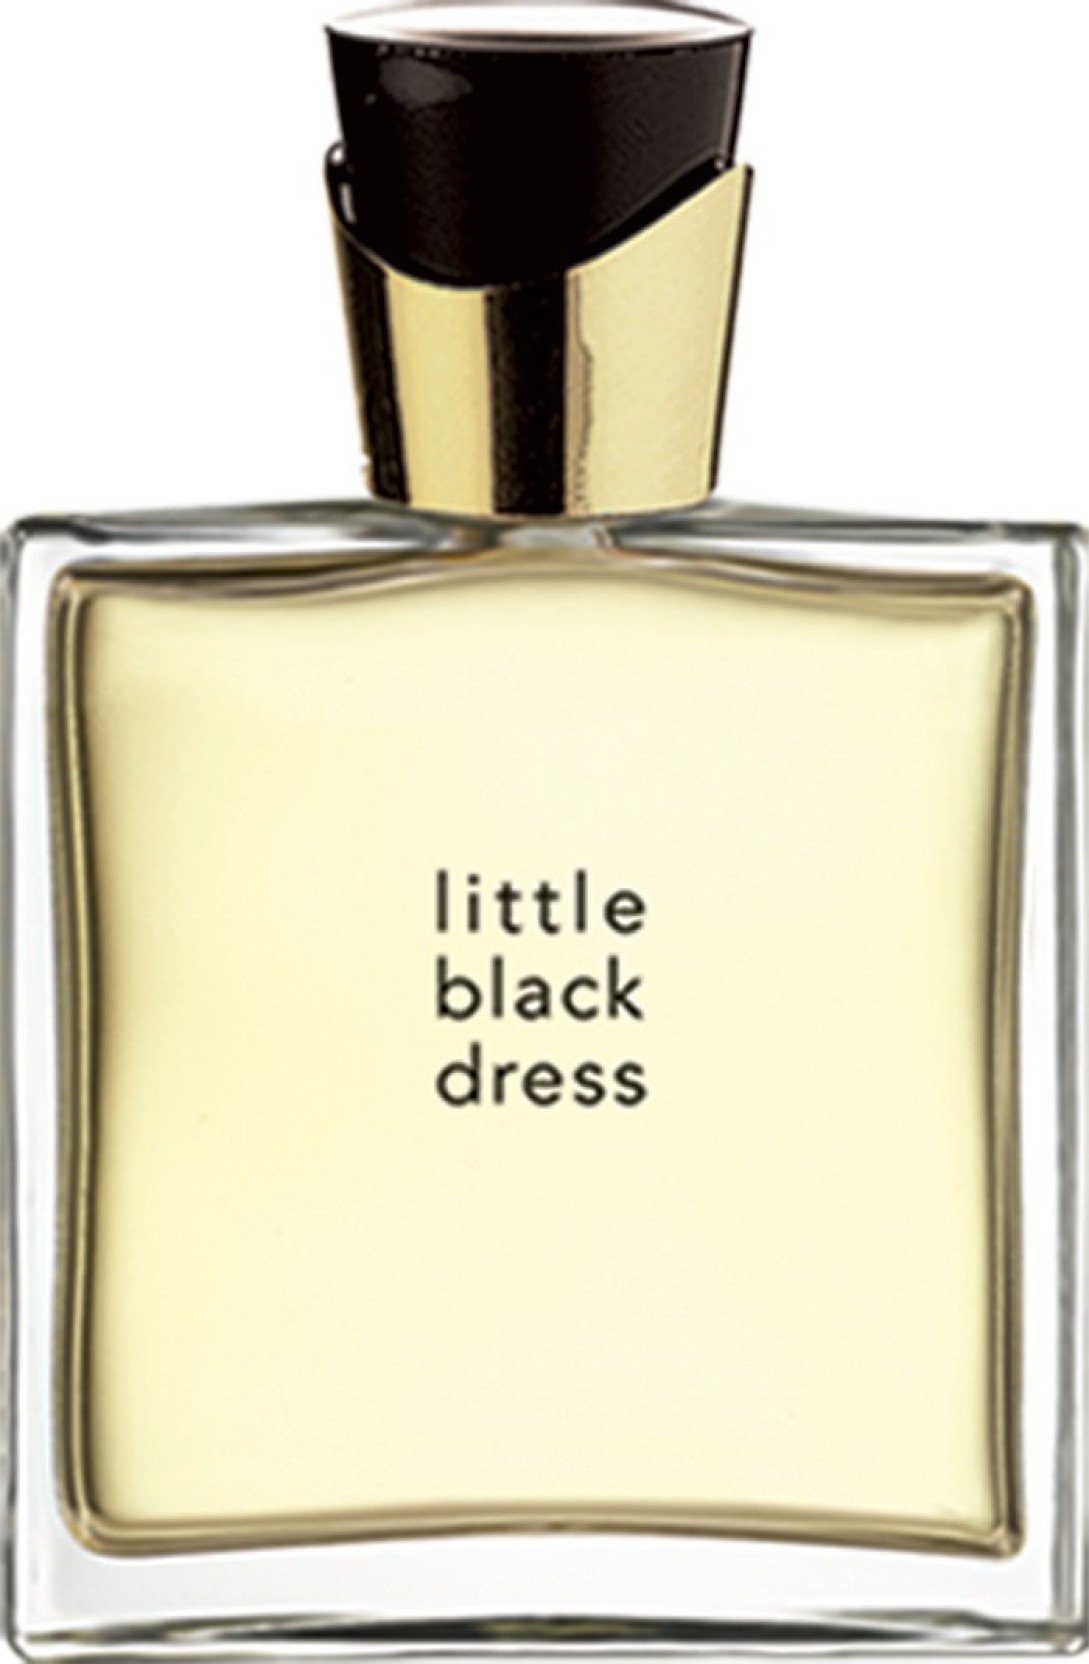 Little black dress edp